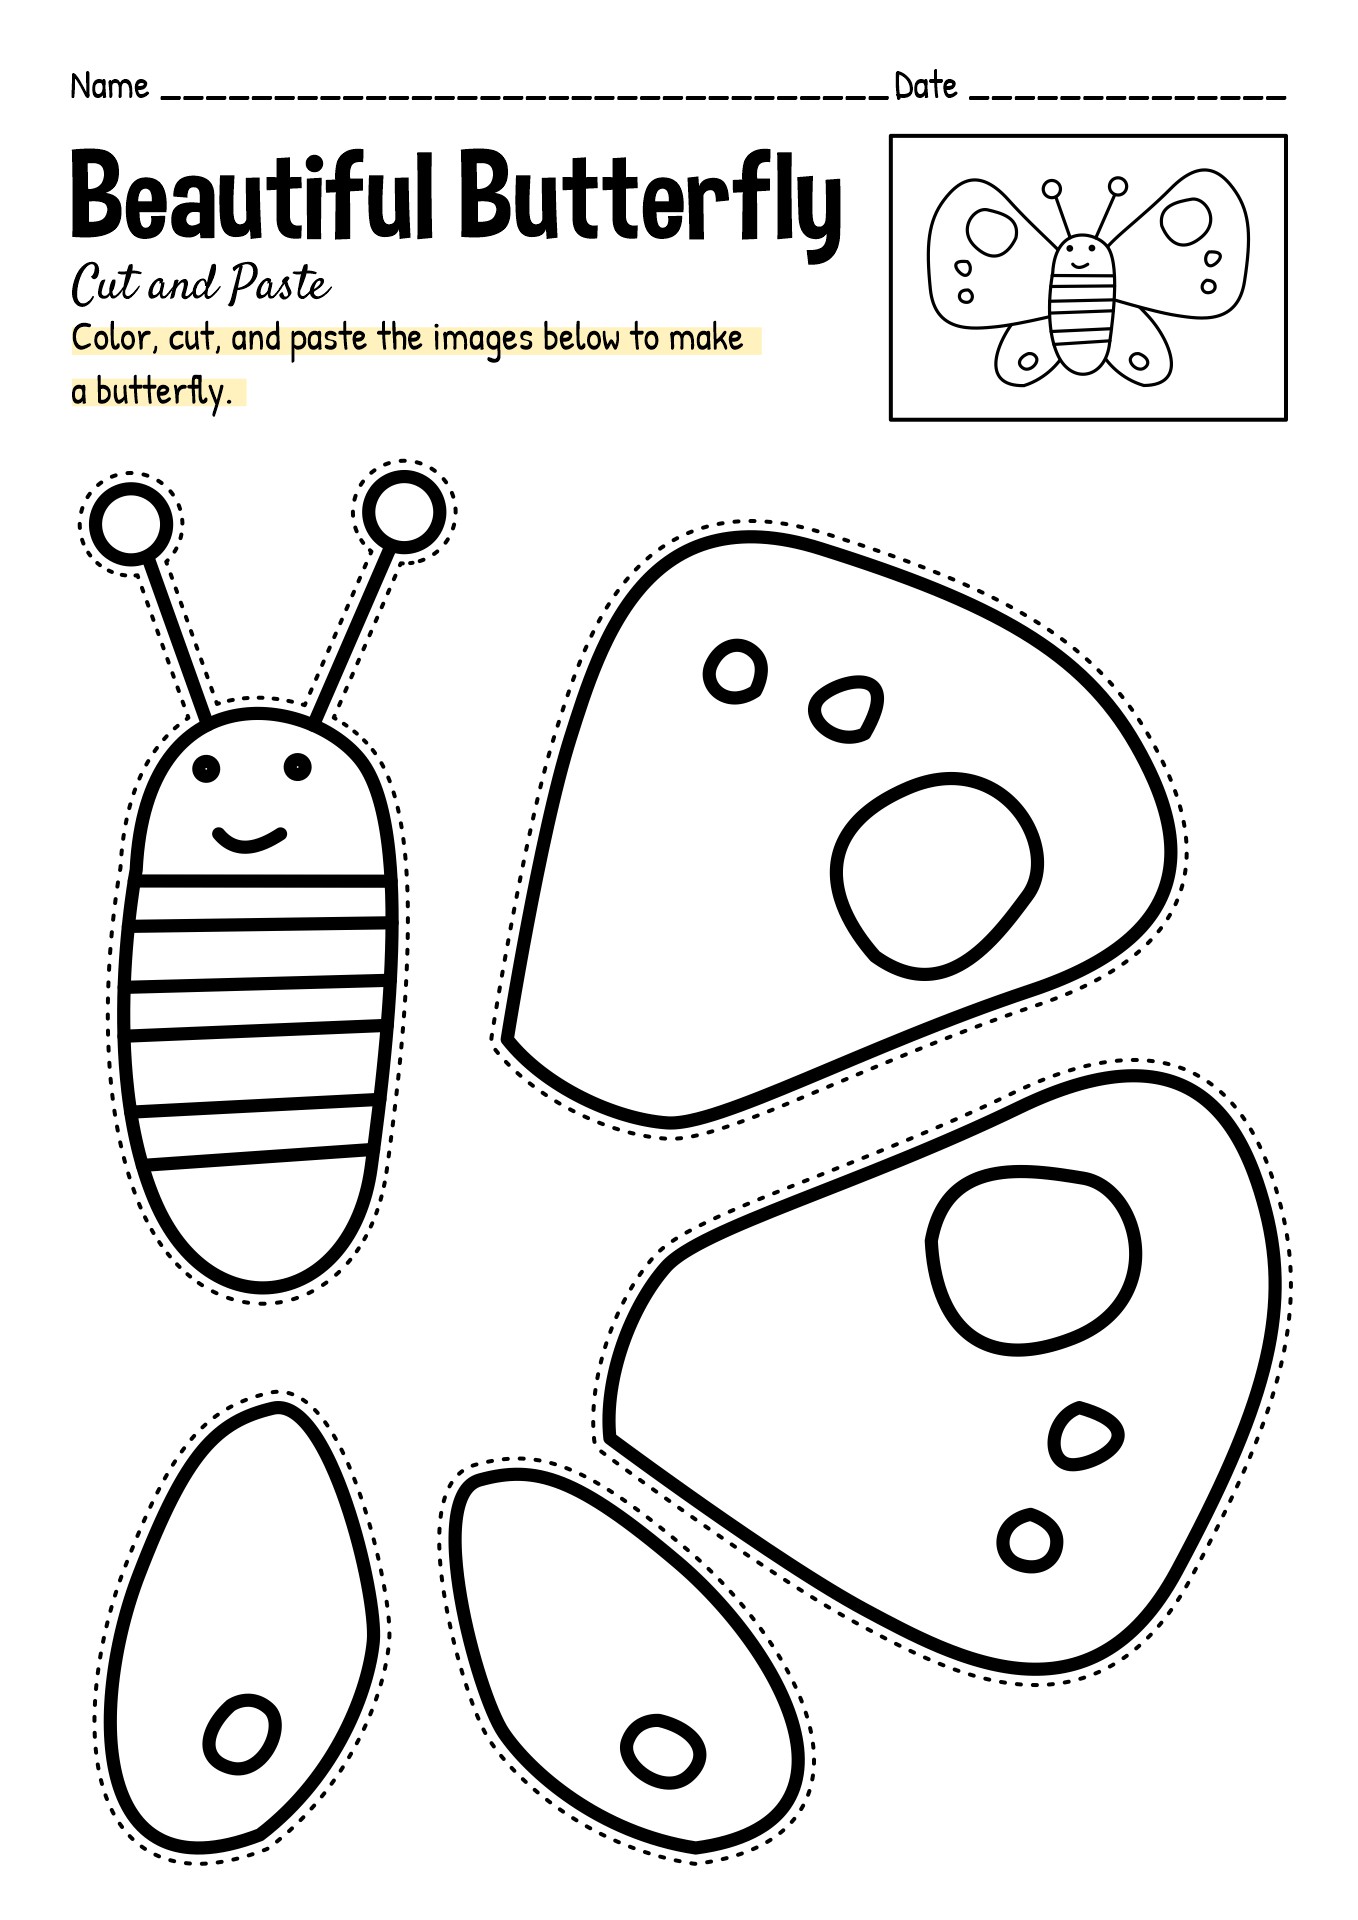 13-cut-and-paste-worksheets-for-kindergarten-free-pdf-at-worksheeto